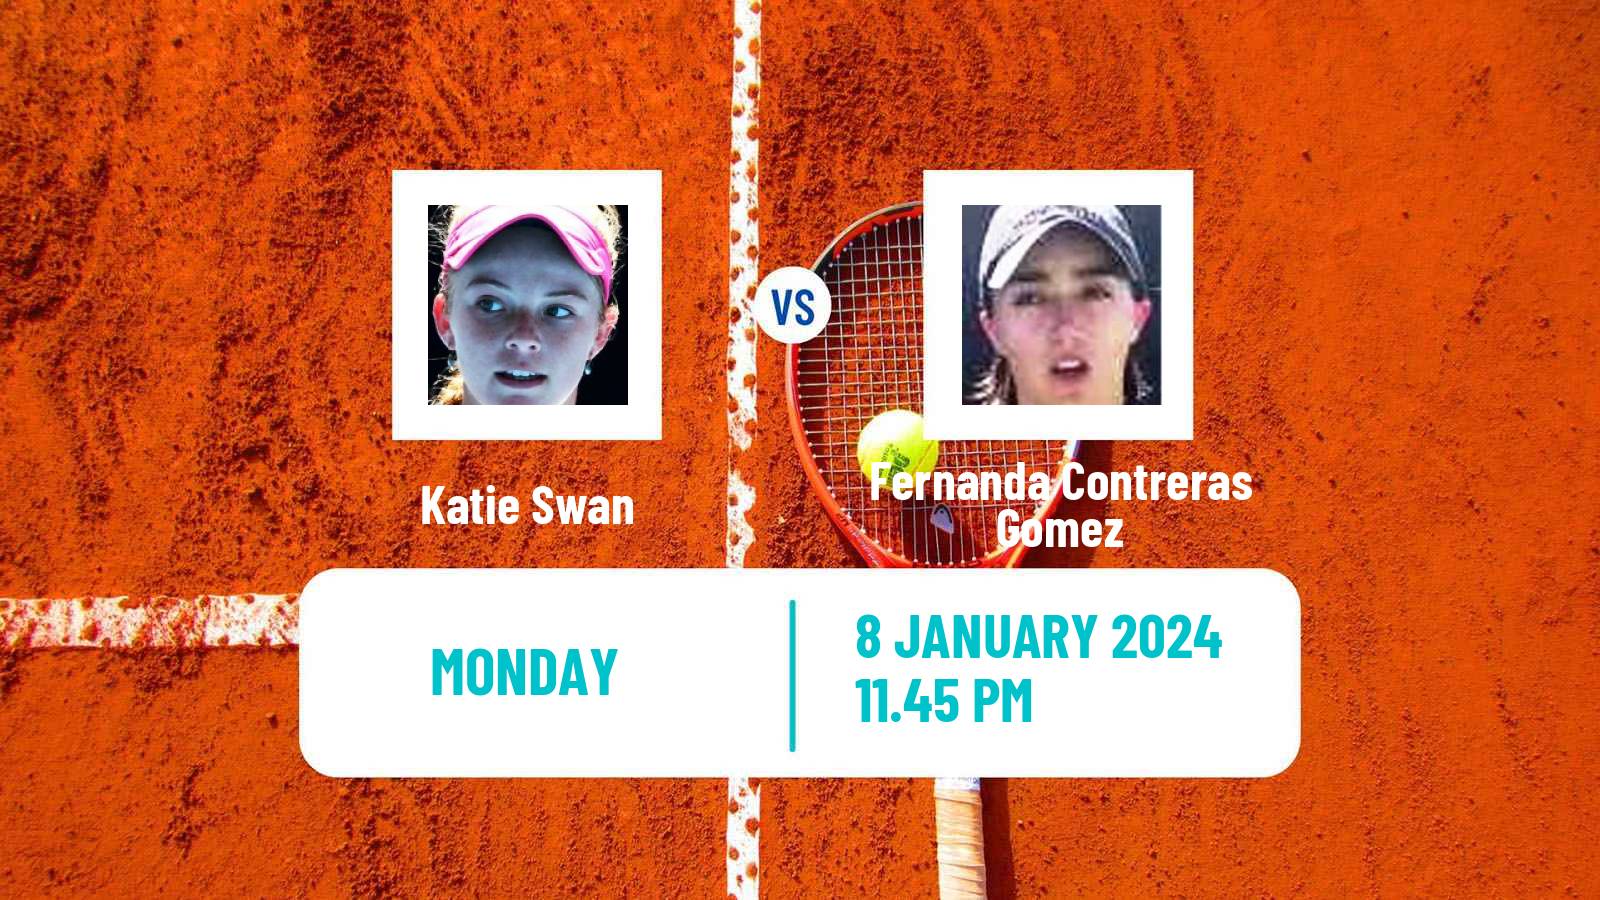 Tennis ITF W50 Nonthaburi 2 Women Katie Swan - Fernanda Contreras Gomez